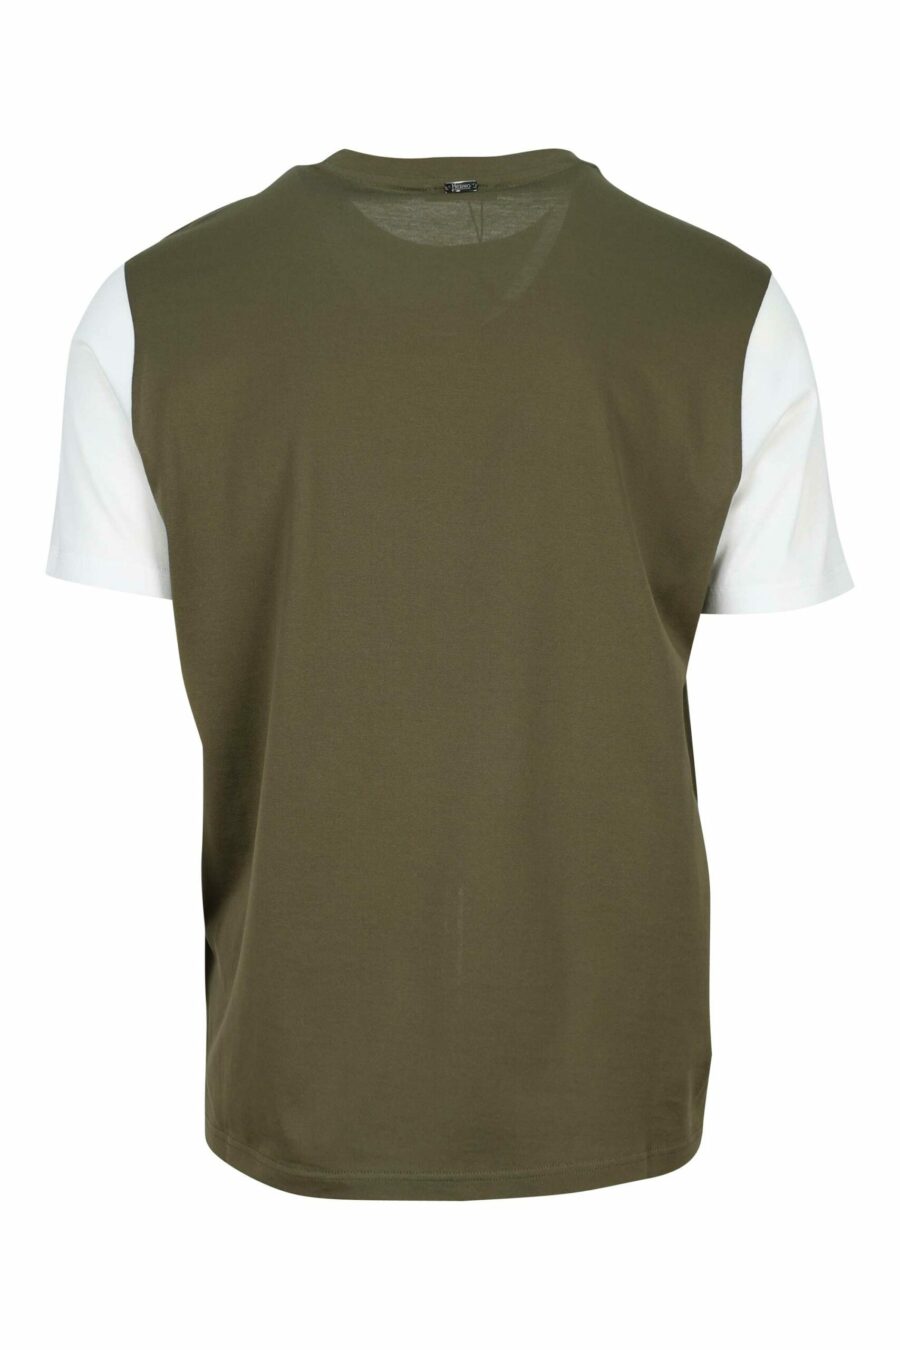 Camiseta verde militar de punto - 8055721948850 1 scaled